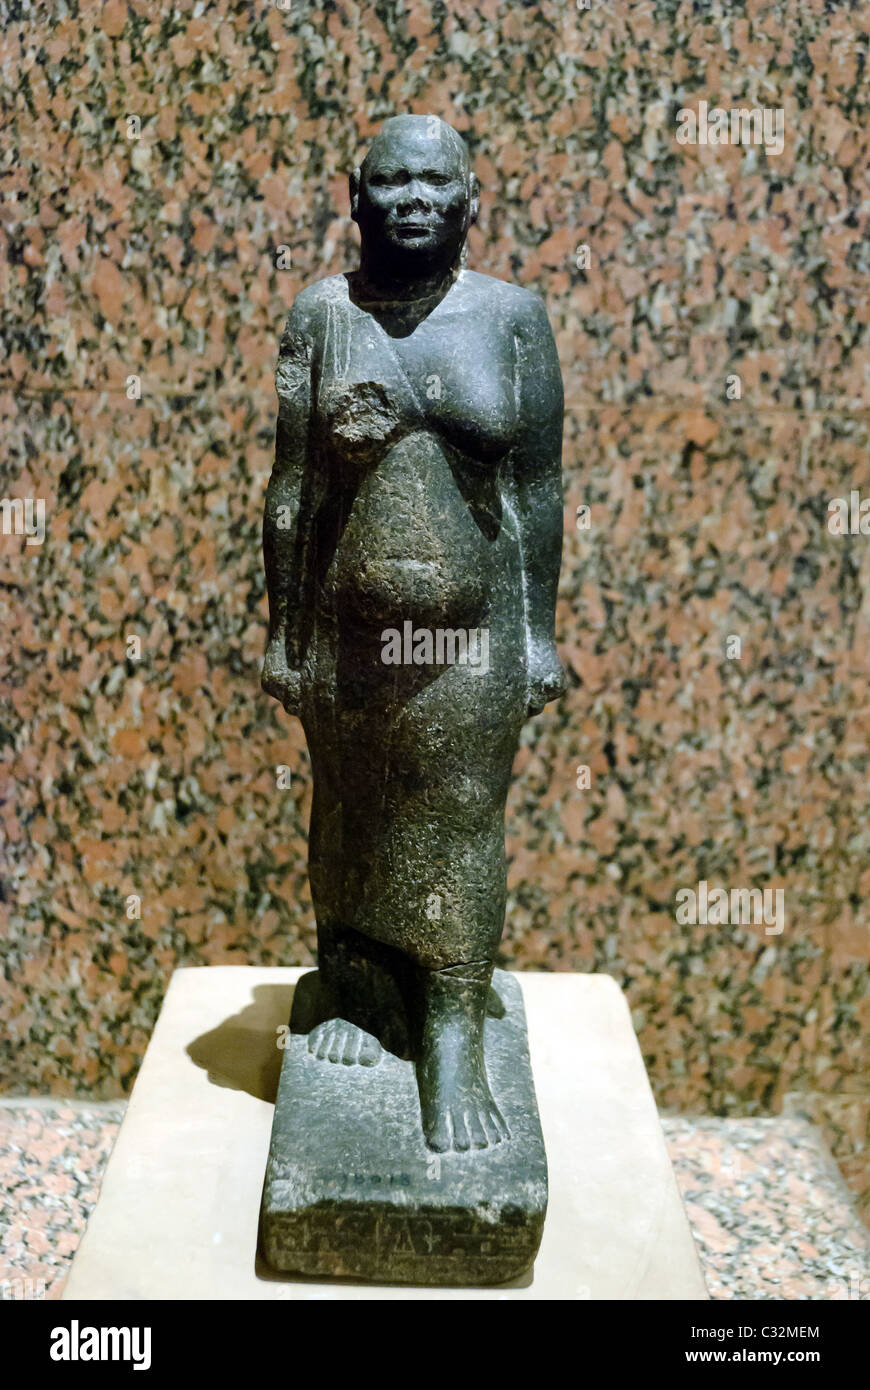 Statue of Iriketakana, official sent from king of kush to Egypt. Granite- 7th century B.C. - Karnak.  Nubian Museum, Aswan, Upper Egypt Stock Photo